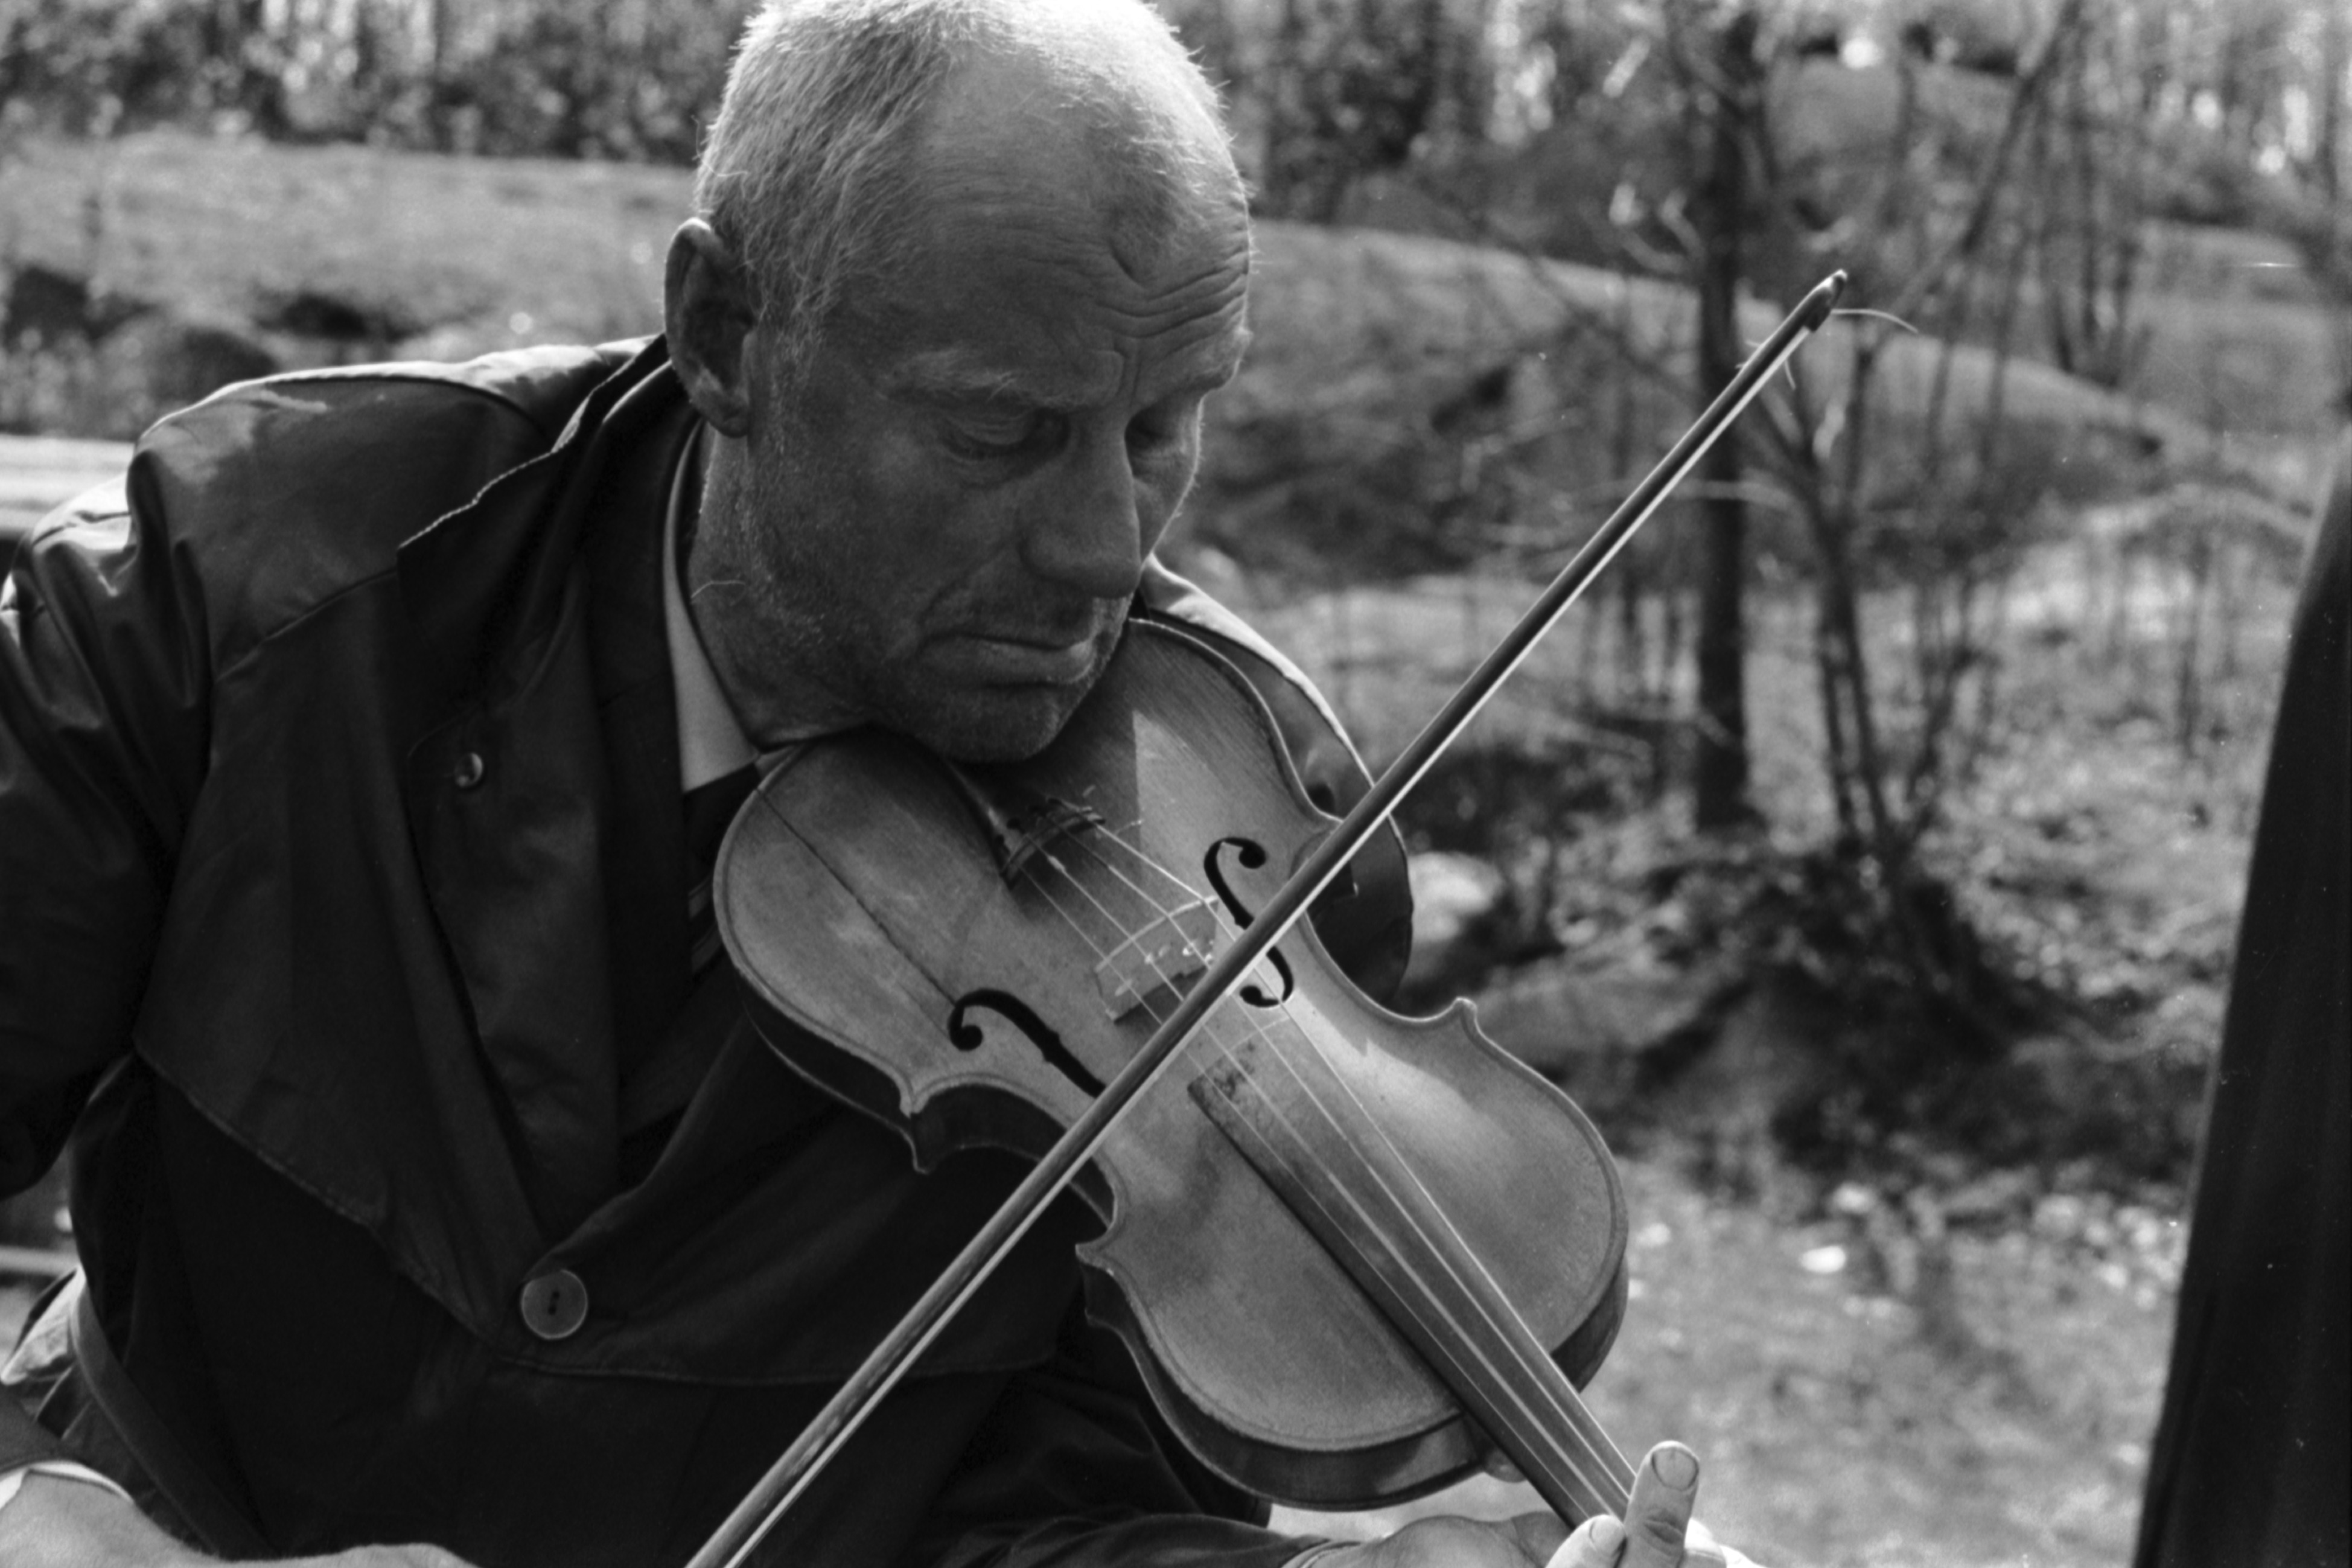 Sibeliuksen puisto. Helsingin juhlaviikot. Vanha mies soittamassa viulua puistotapahtumassa Sibeliuksen puistossa.